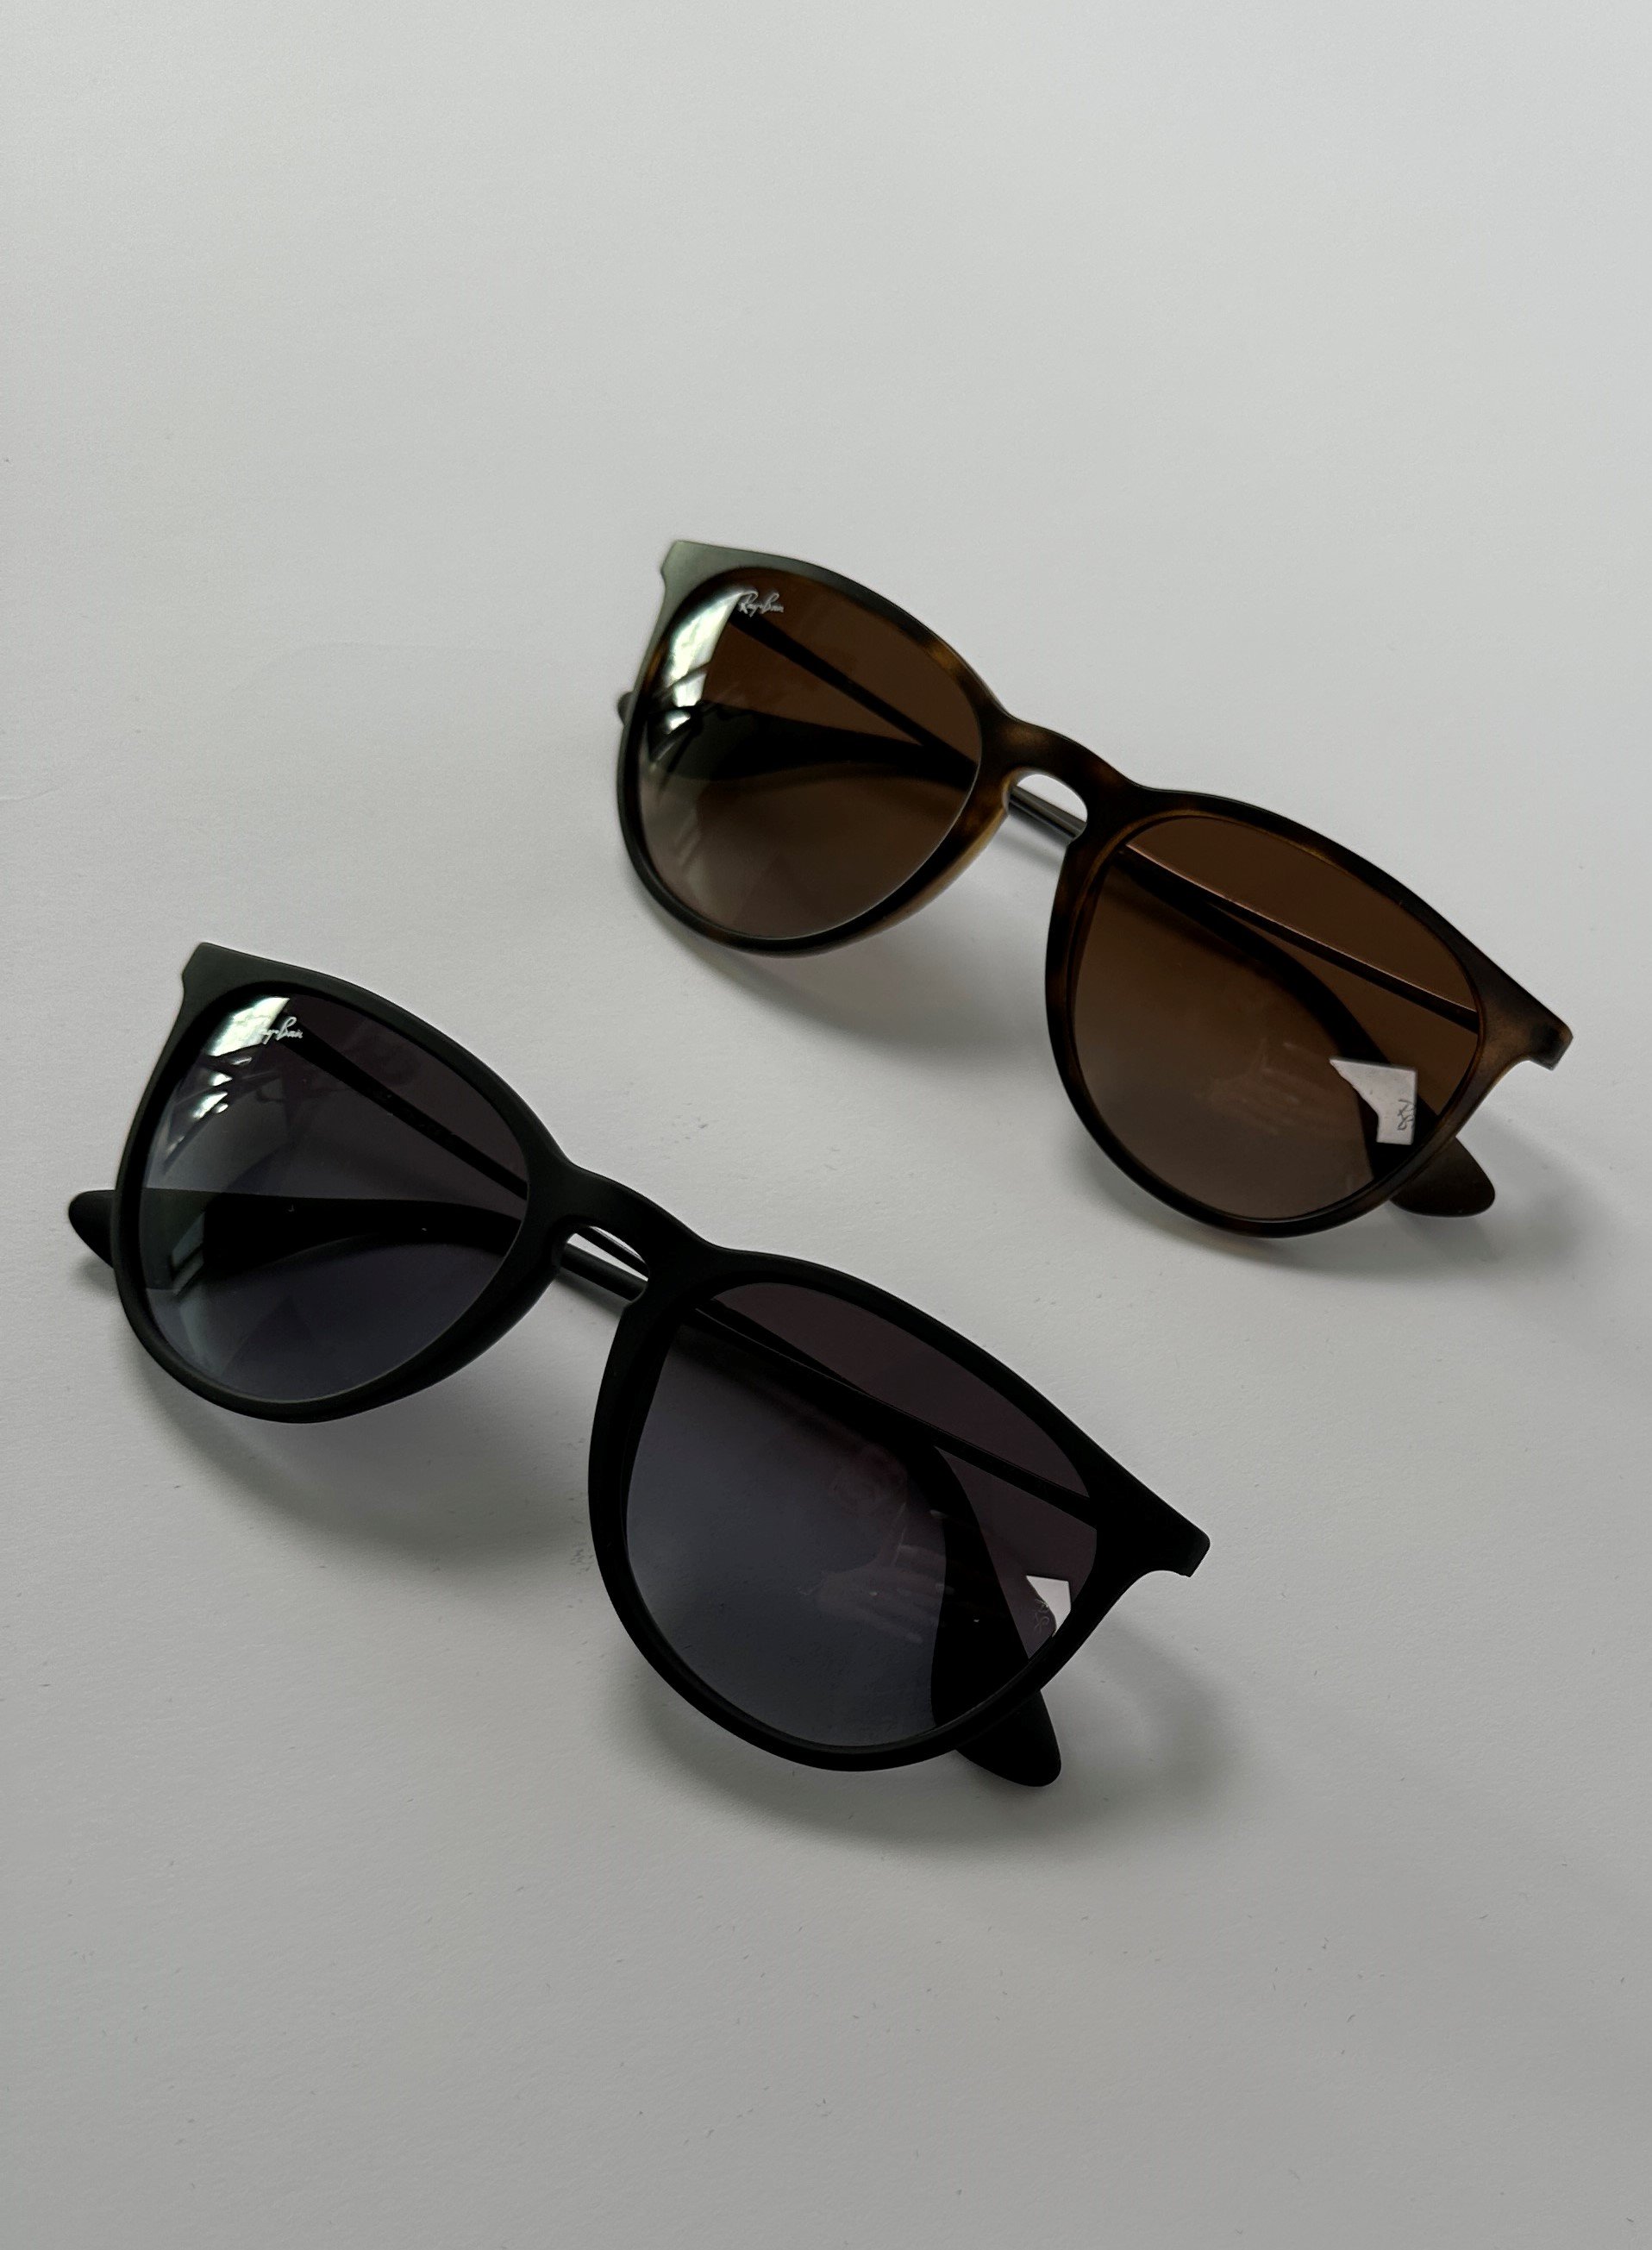 zu sehen sind zwei Sonnenbrillen Modell Erika von Ray-Ban